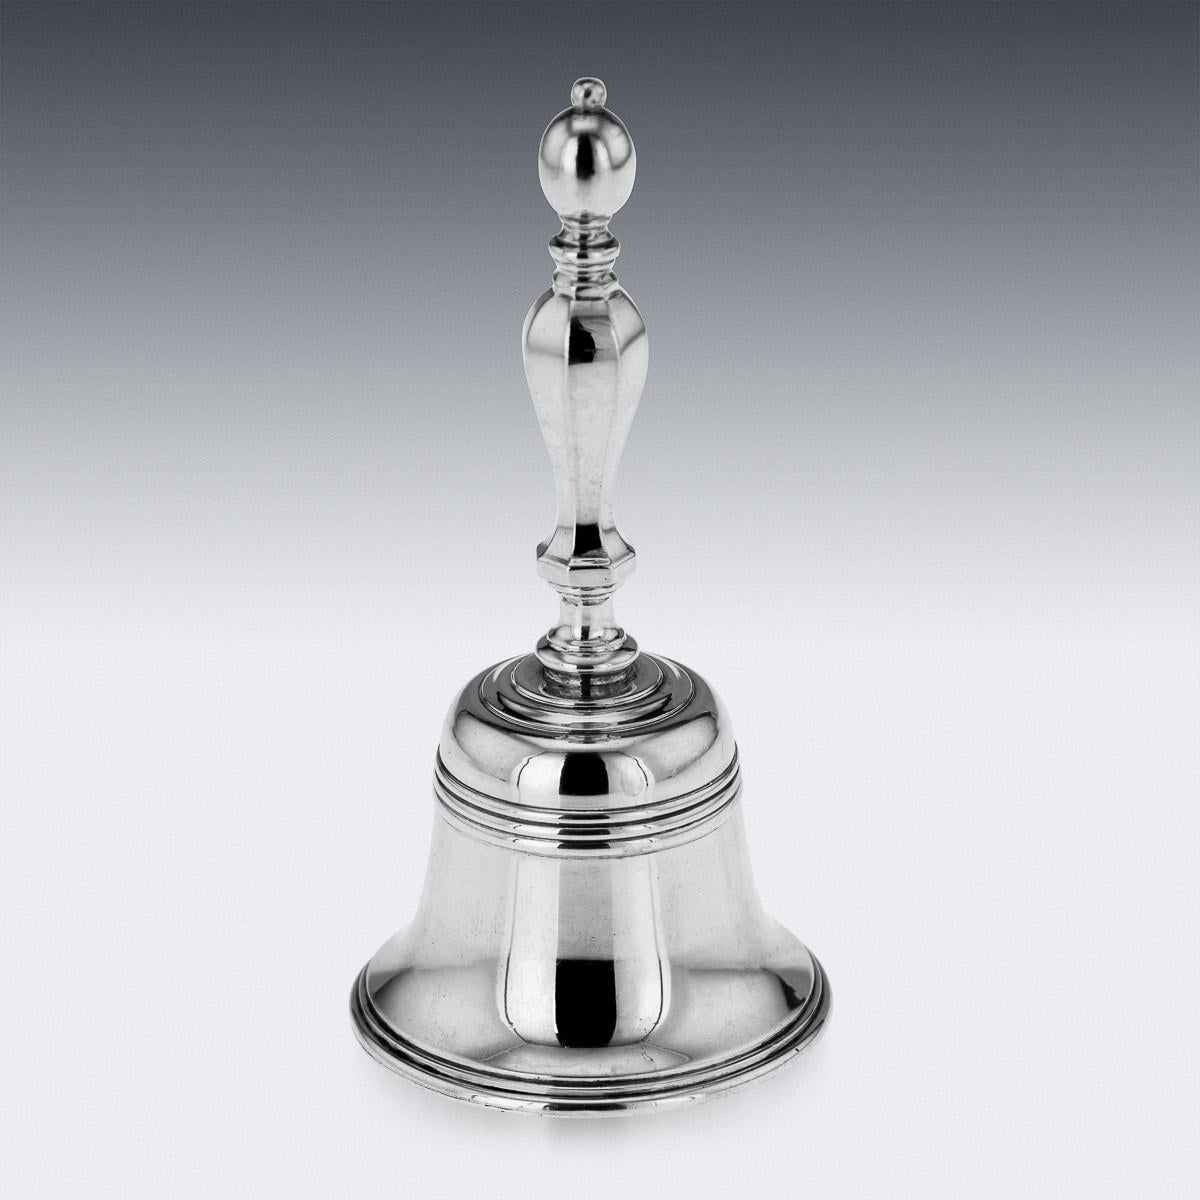 Superbe cloche de bureau ou de table en argent massif anglais du 20e siècle. La cloche, d'un calibre élevé, a un corps perlé et une poignée joliment formée. C'est le complément idéal pour le chariot à boissons, le bureau ou la table à manger.